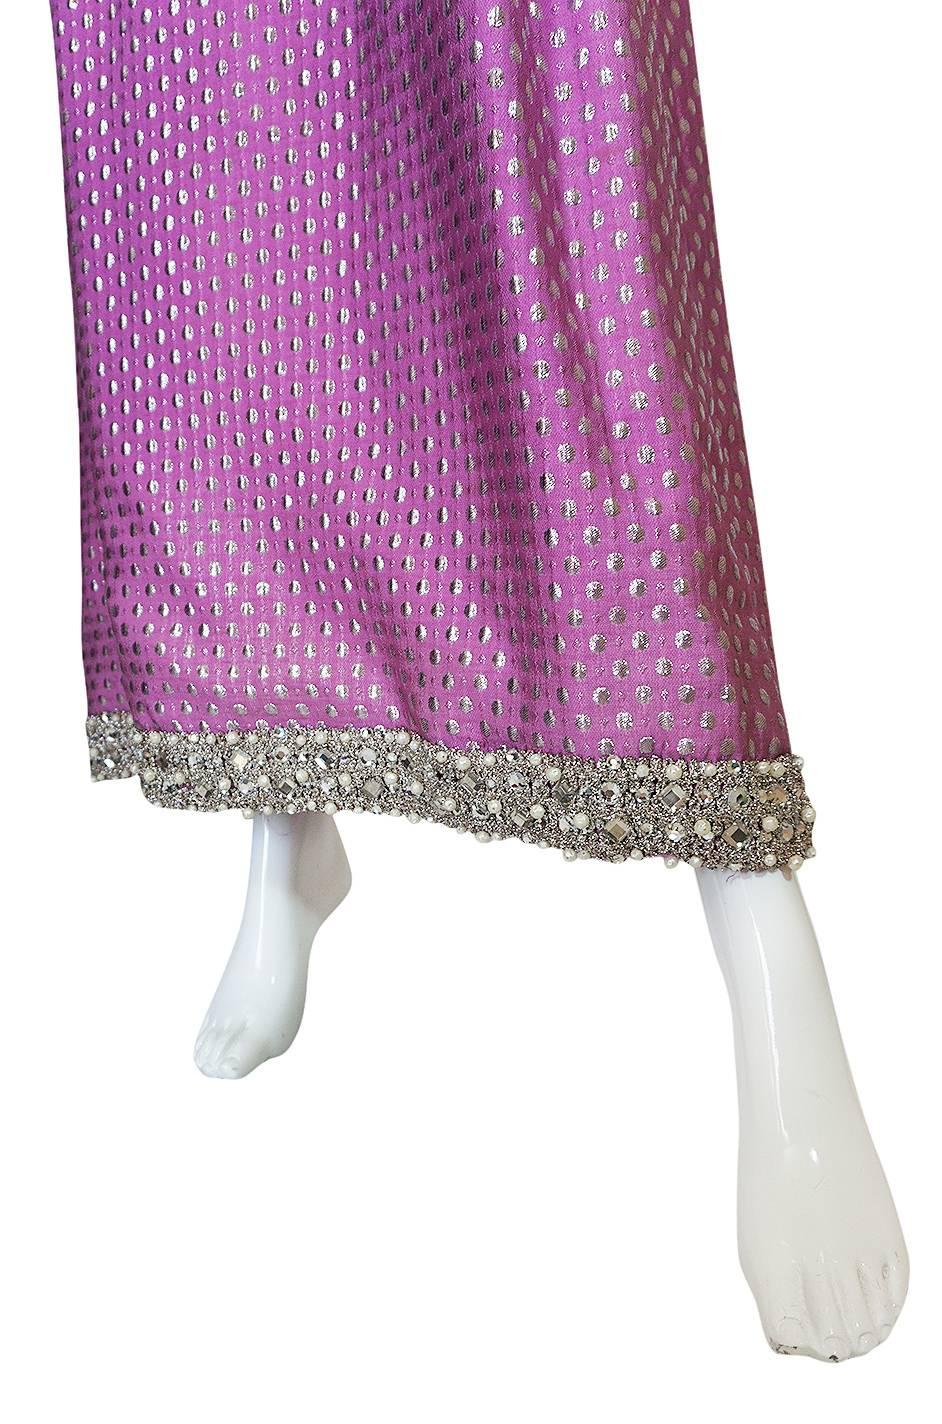 Women's c1965-69 Lavender & Silver Beaded Oscar de la Renta Dress